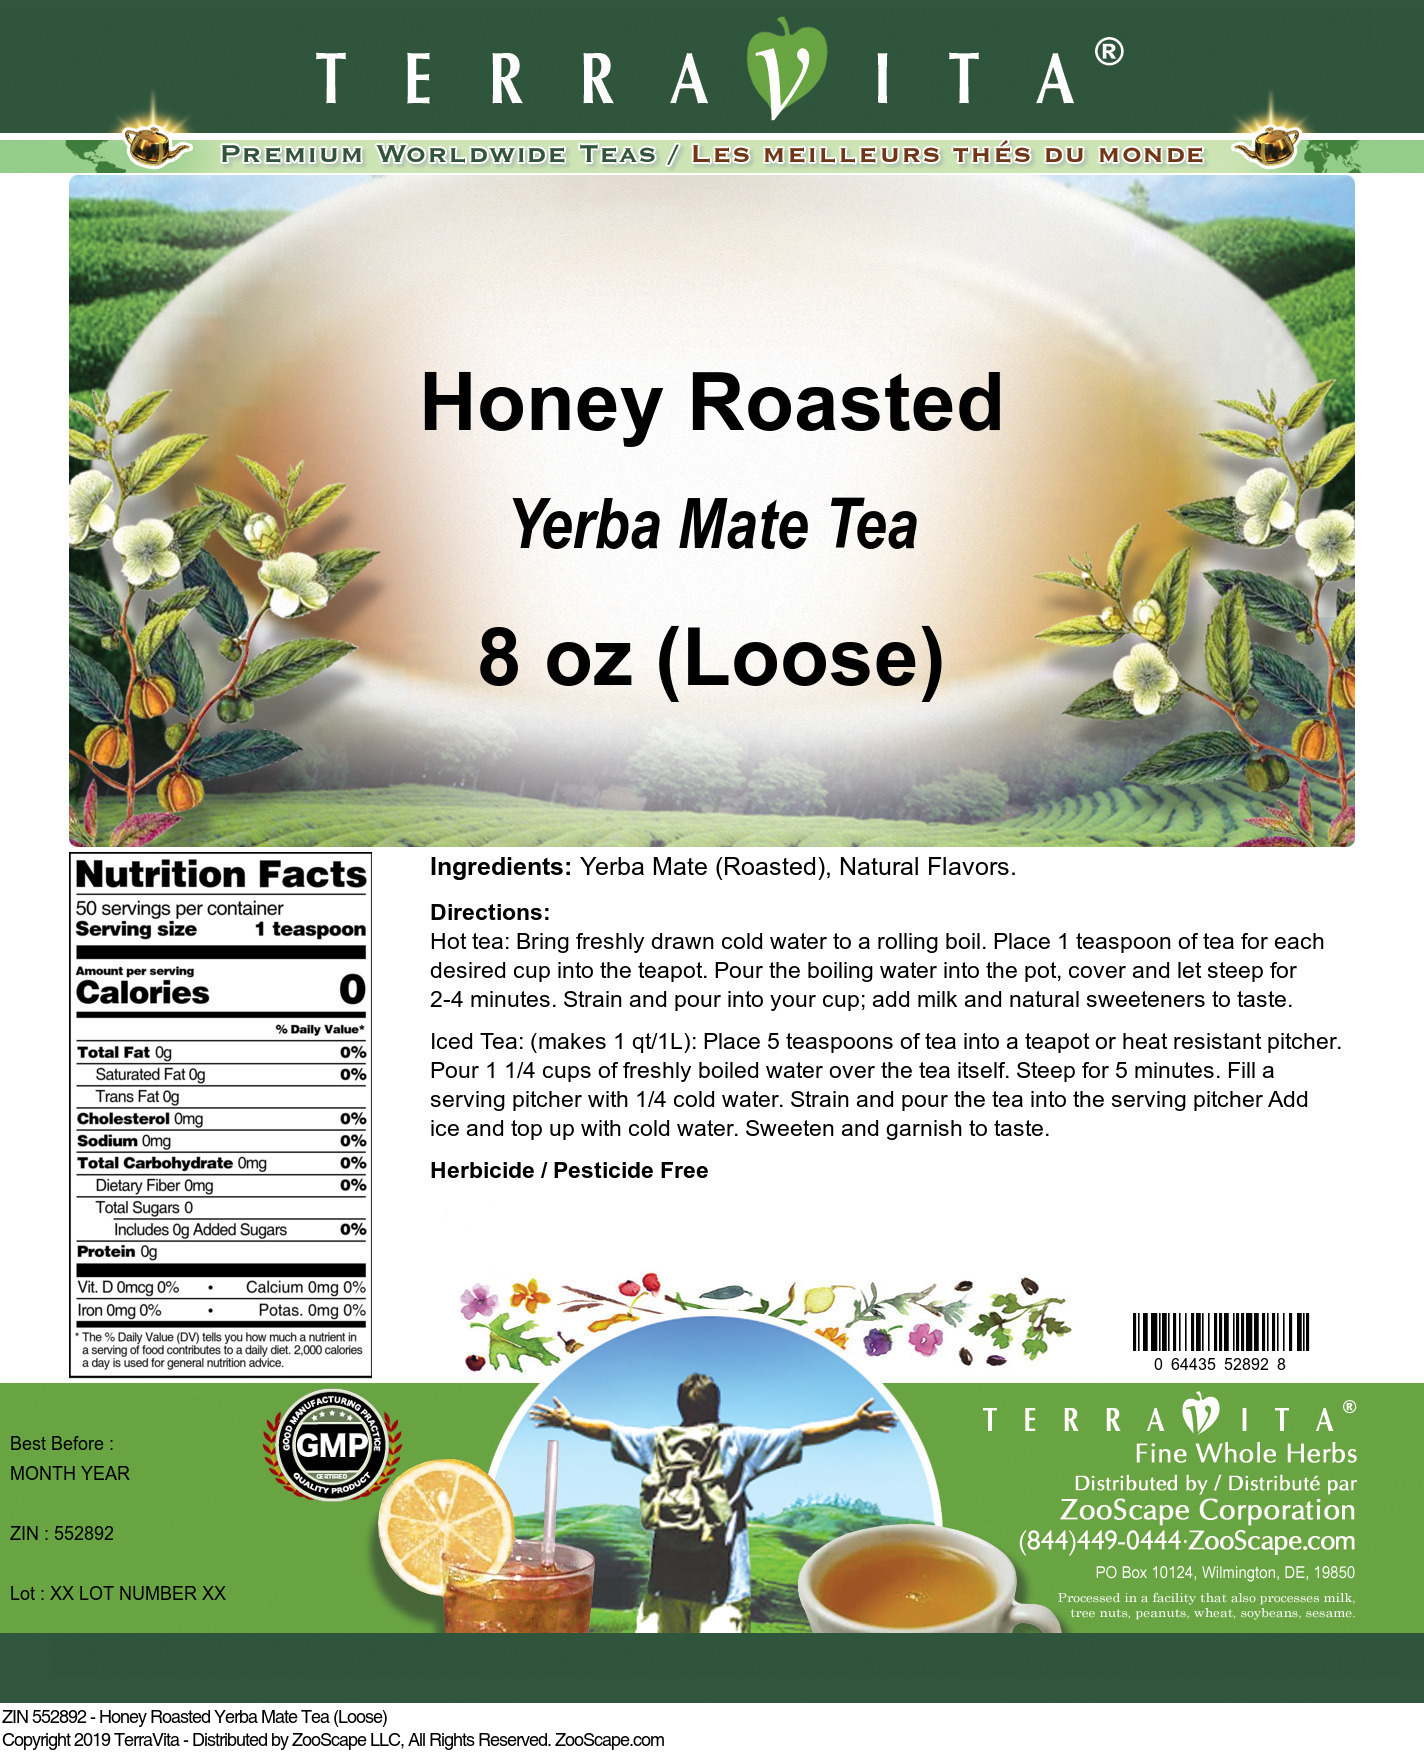 Honey Roasted Yerba Mate Tea (Loose) - Label